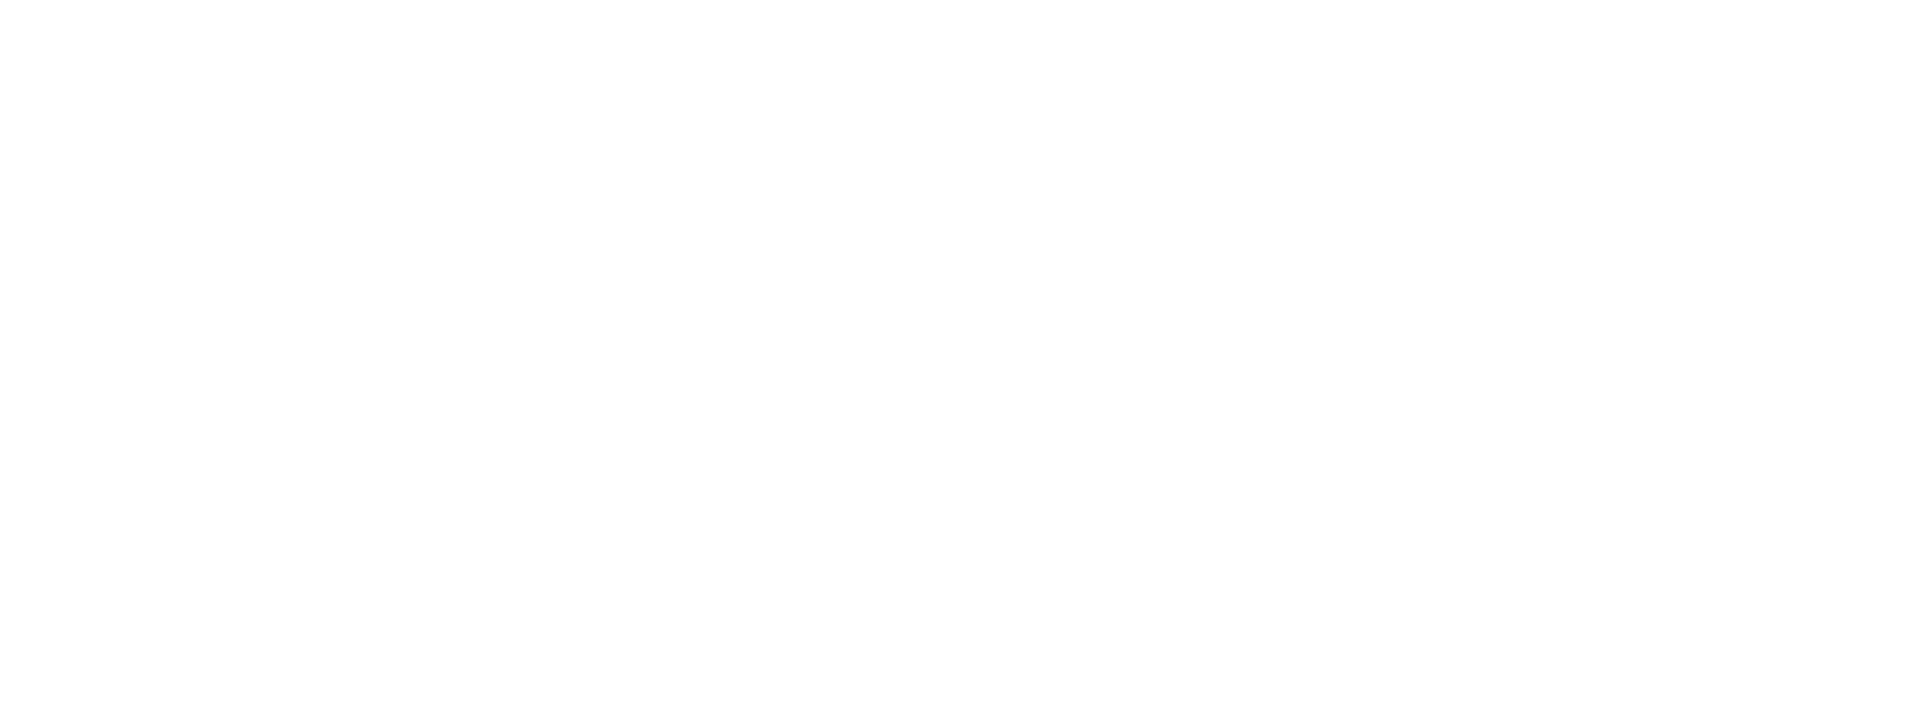 Farahigram